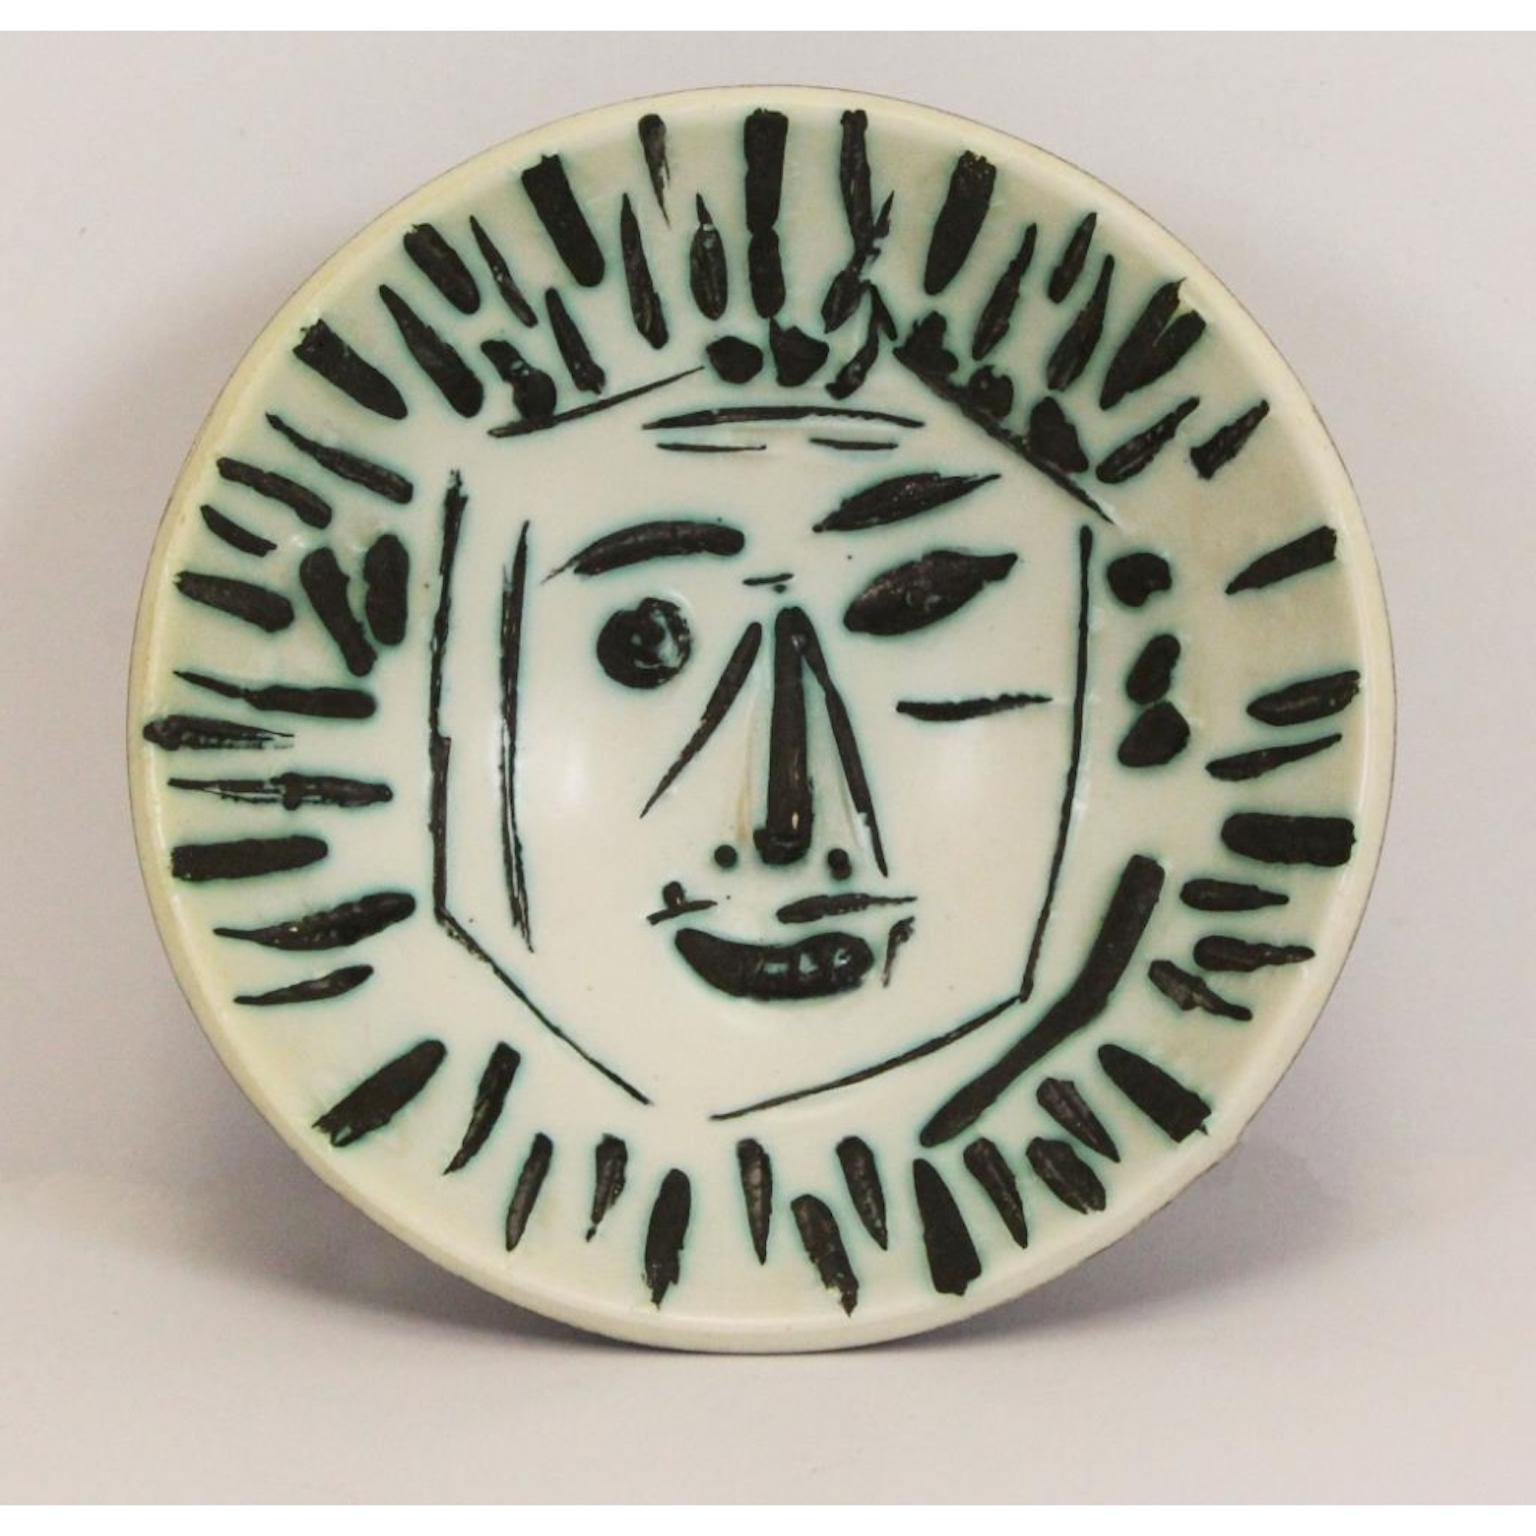 Picasso bowl numbered 25/100 excellent condition 
Visage de face, 1960
Catalogue raisonne: Alain Ramie 454